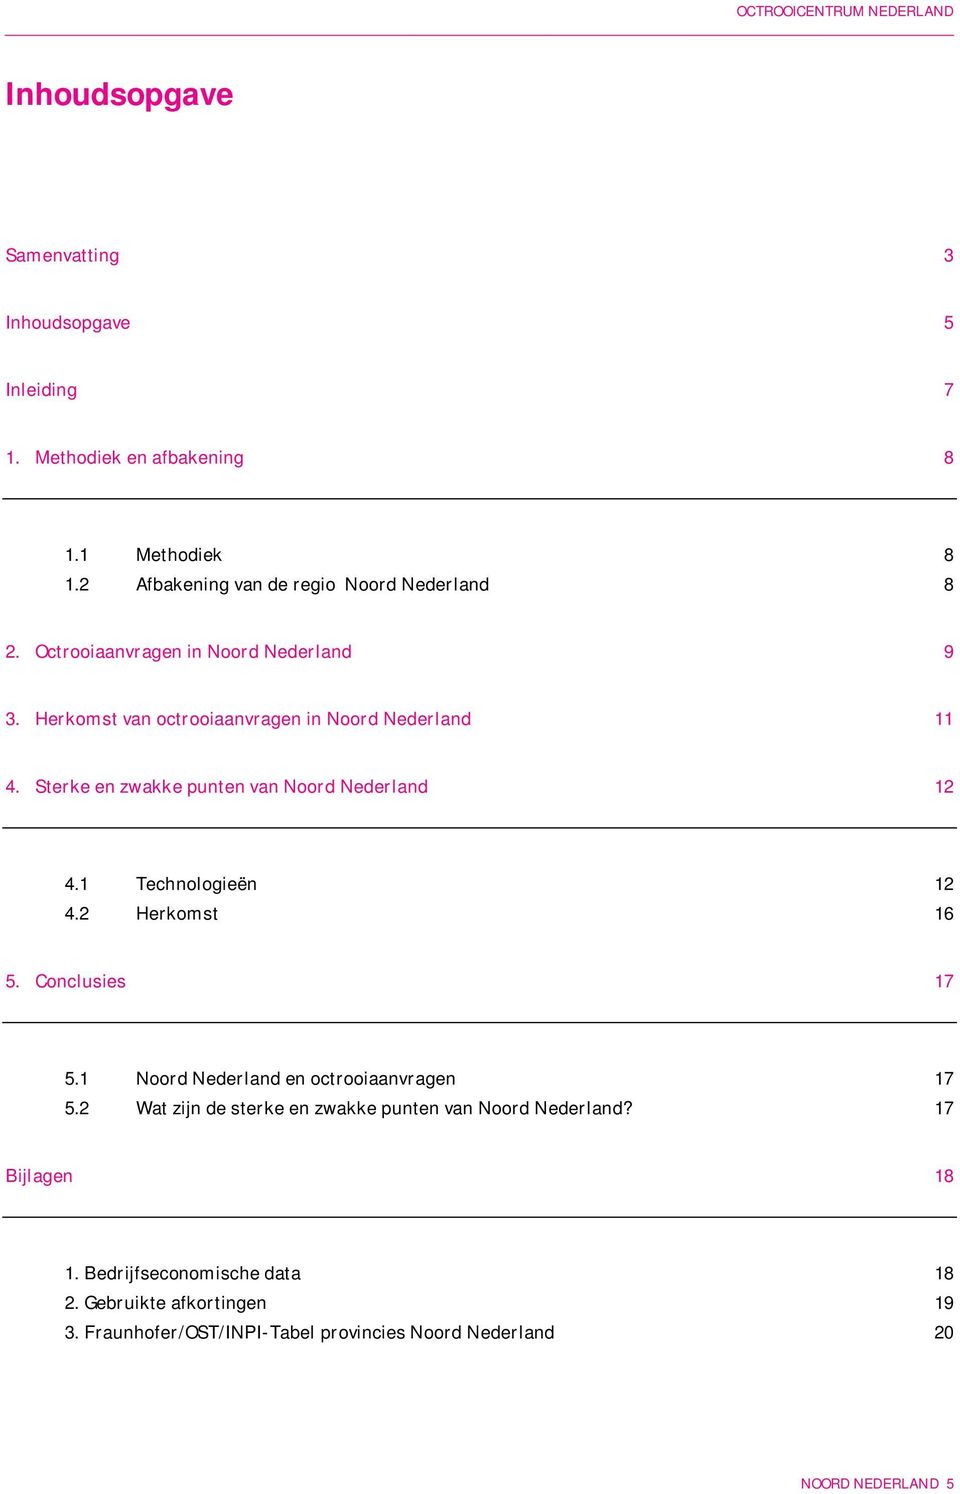 1 Technologieën 12 4.2 Herkomst 16 5. Conclusies 17 5.1 Noord Nederland en octrooiaanvragen 17 5.